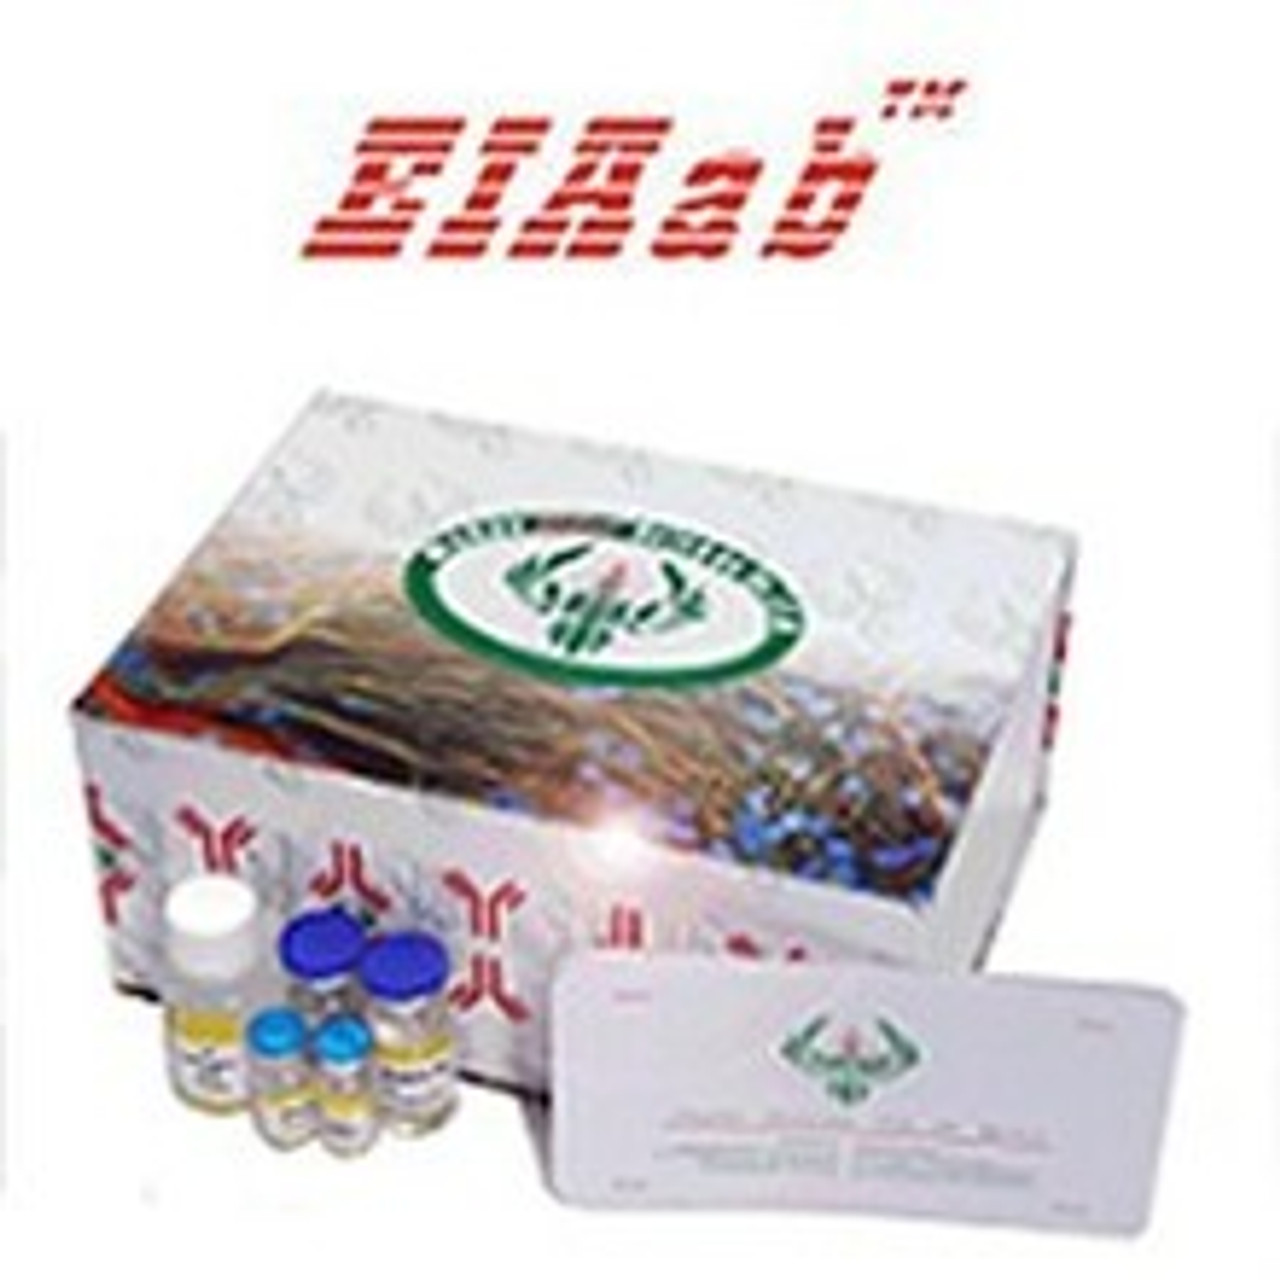 Rat Comt/Catechol O-methyltransferase ELISA Kit